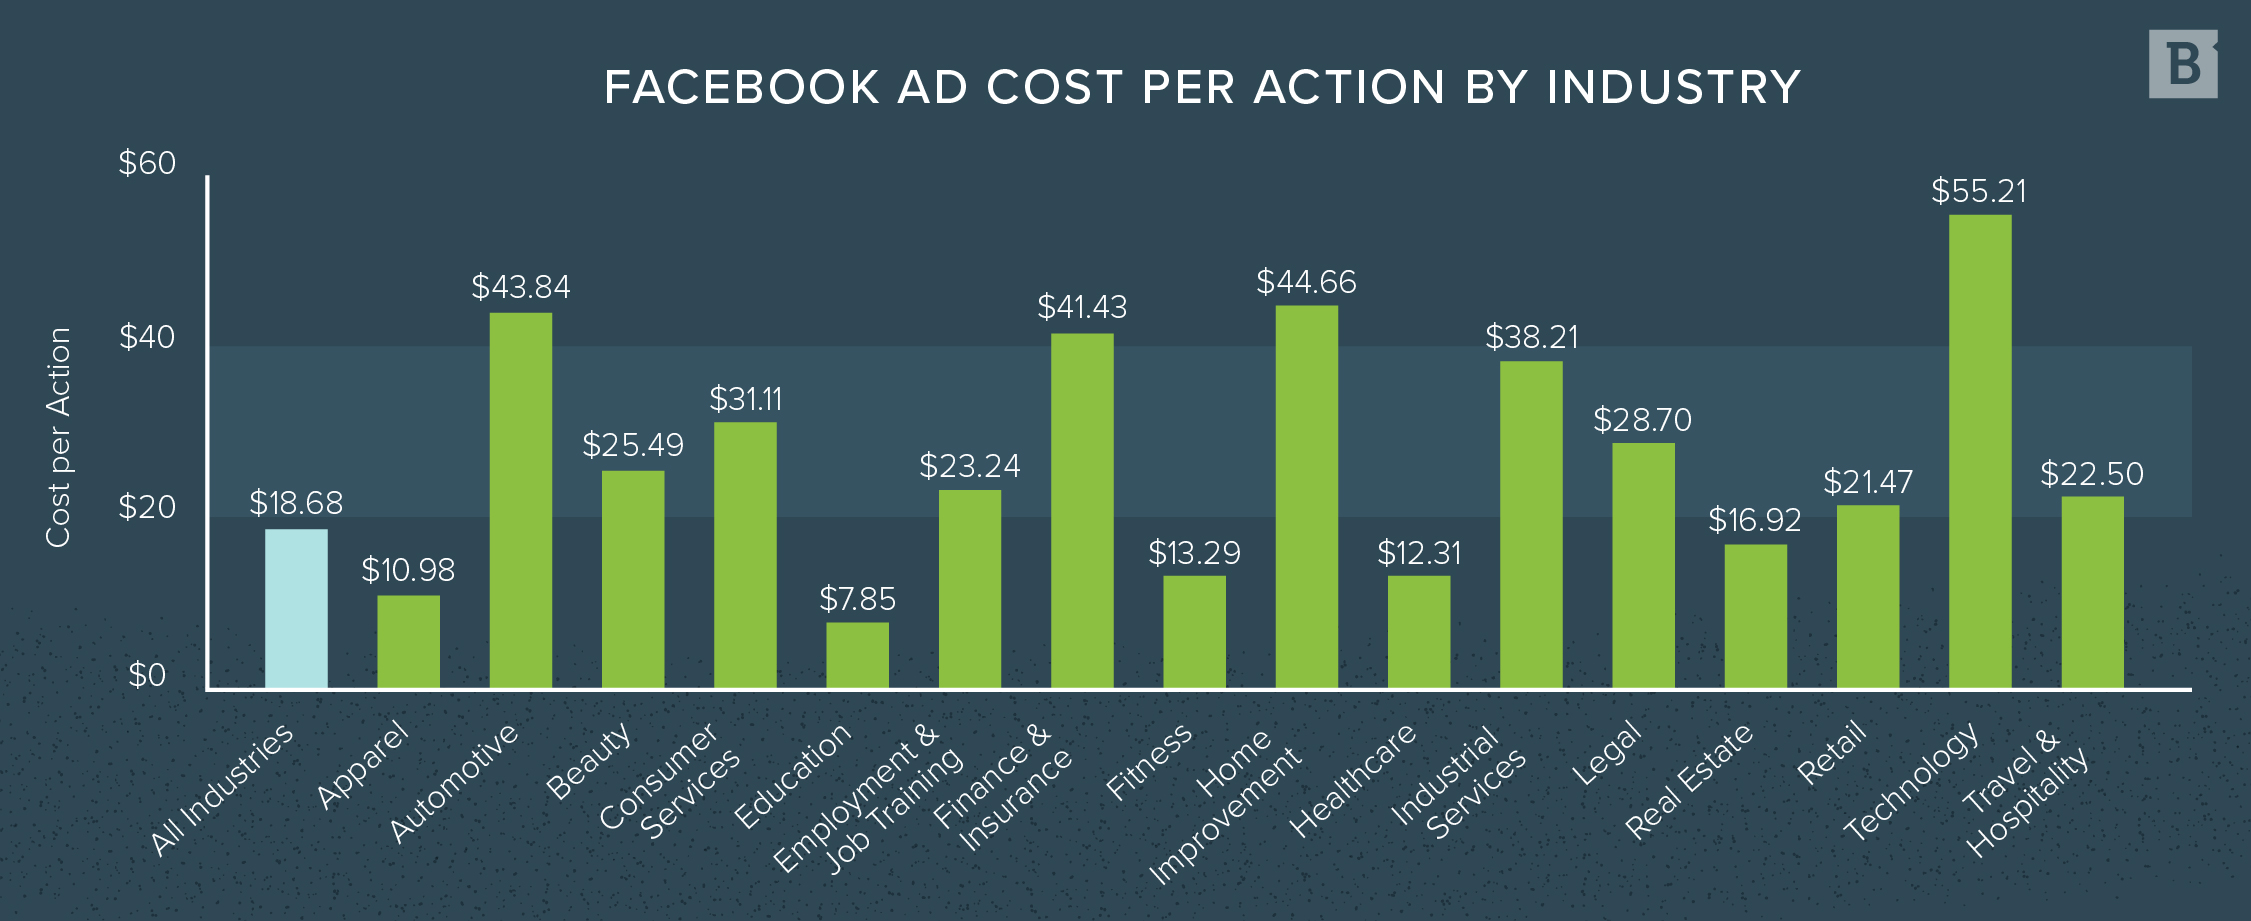 按行业划分的Facebook每项行动的广告成本